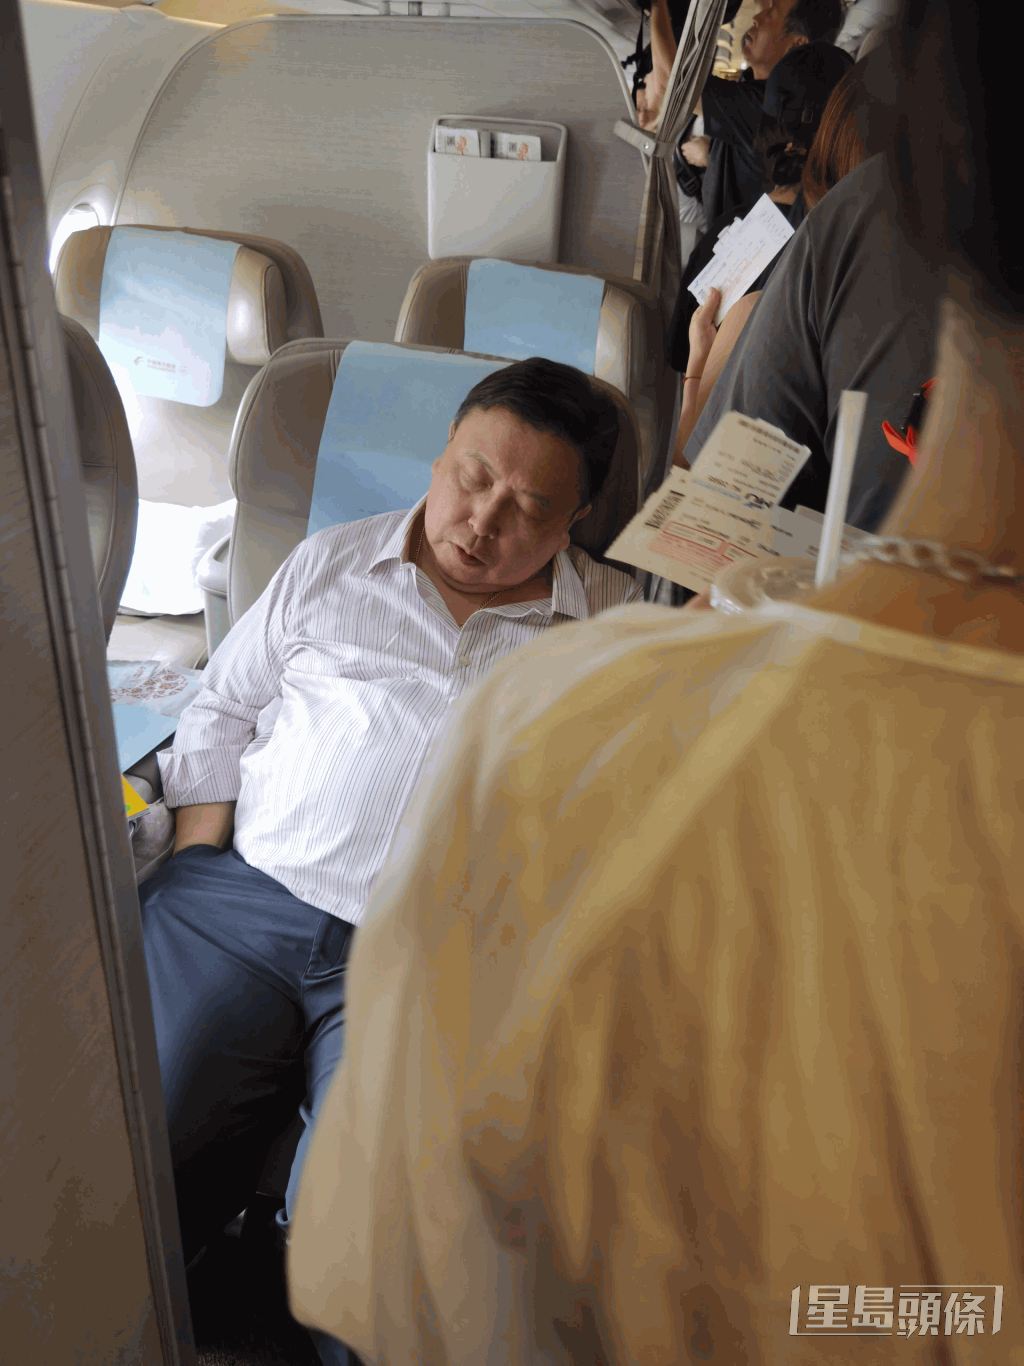 行程忙碌的王晶被網民拍到在登機期間竟然可以安然入睡。